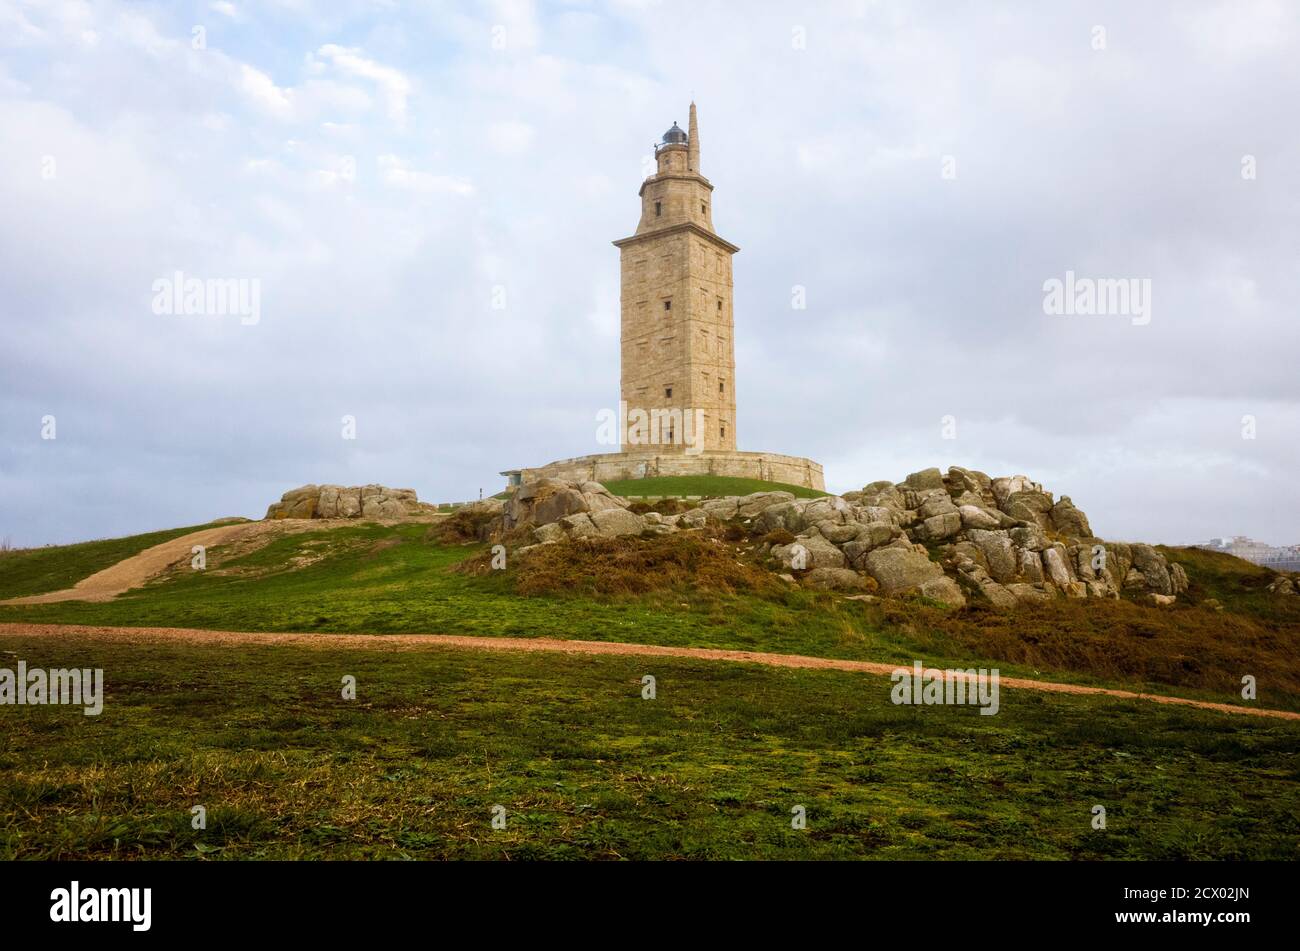 A Coruna, Galicien, Spanien - 10. Februar 2020 : Turm des Herkules römischer Leuchtturm. Erbaut im 2. Jahrhundert und renoviert im Jahr 1791, ist es das älteste Stockfoto